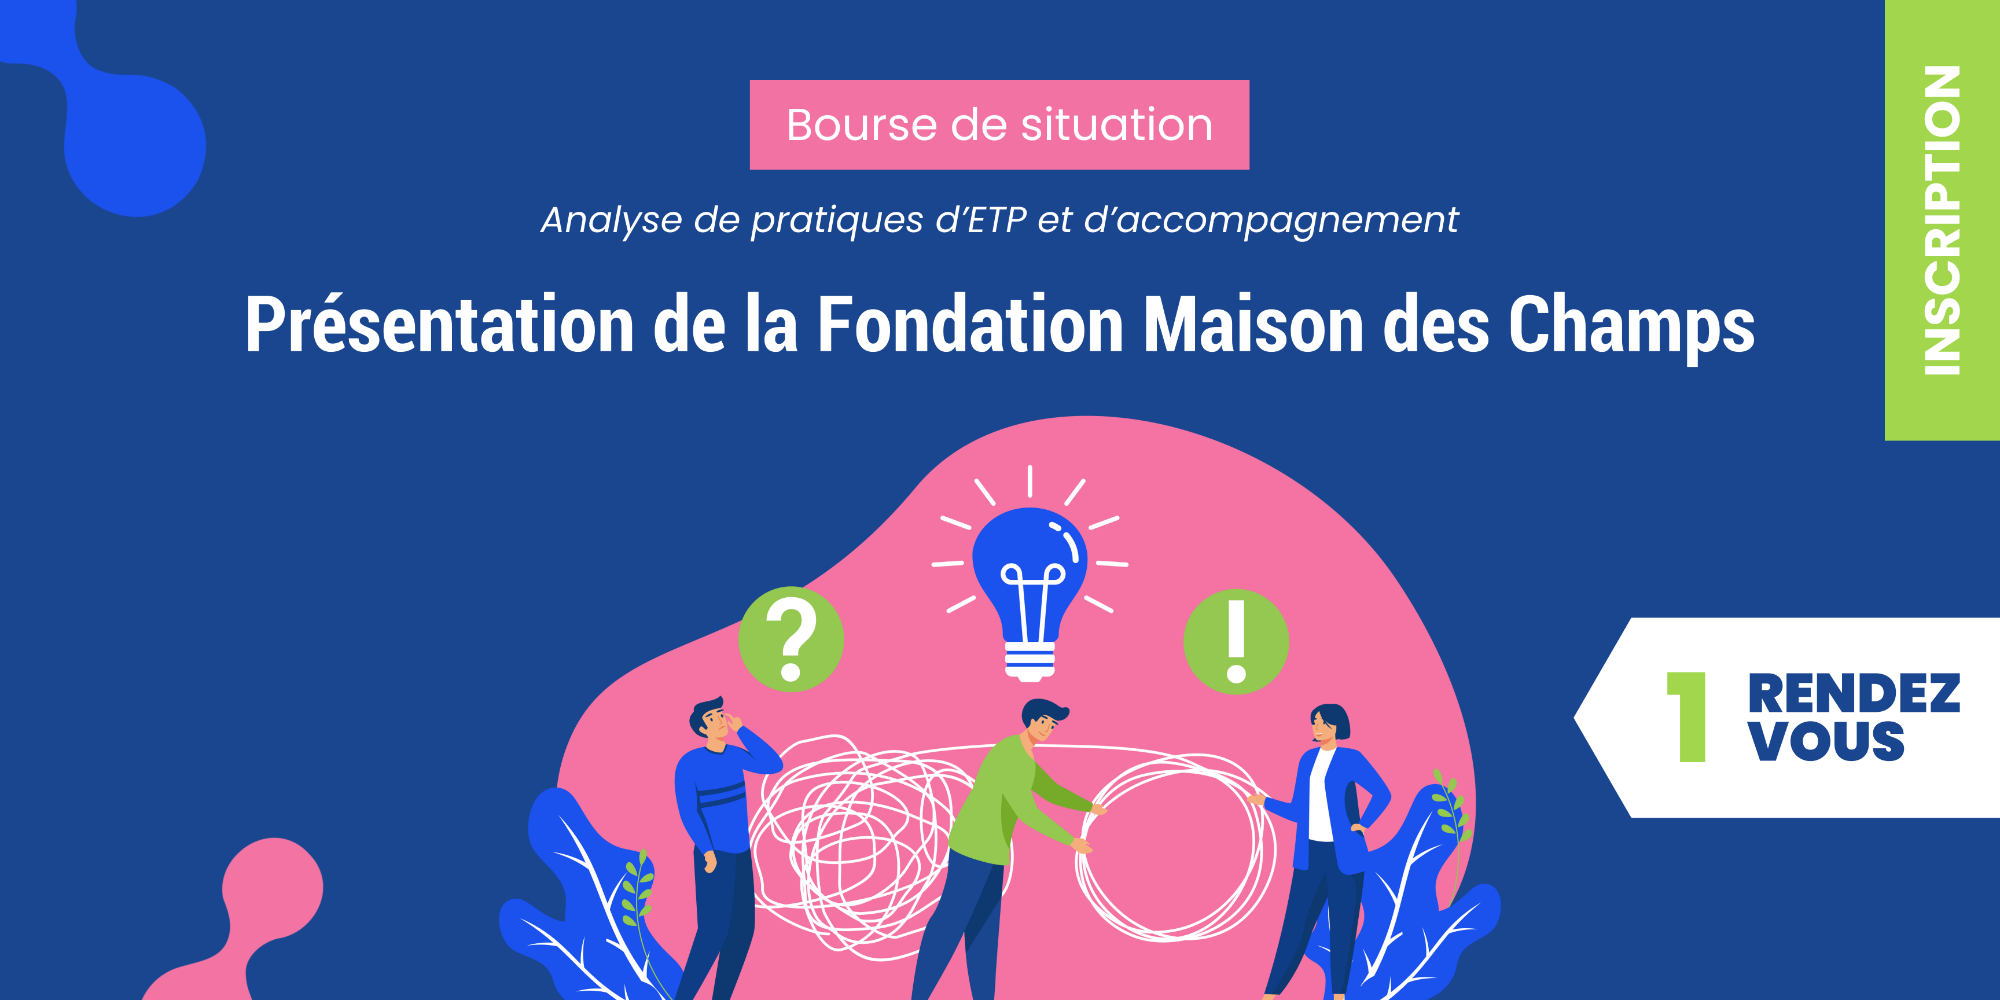 Bourse de situation - Présentation par la Fondation Maison des Champs